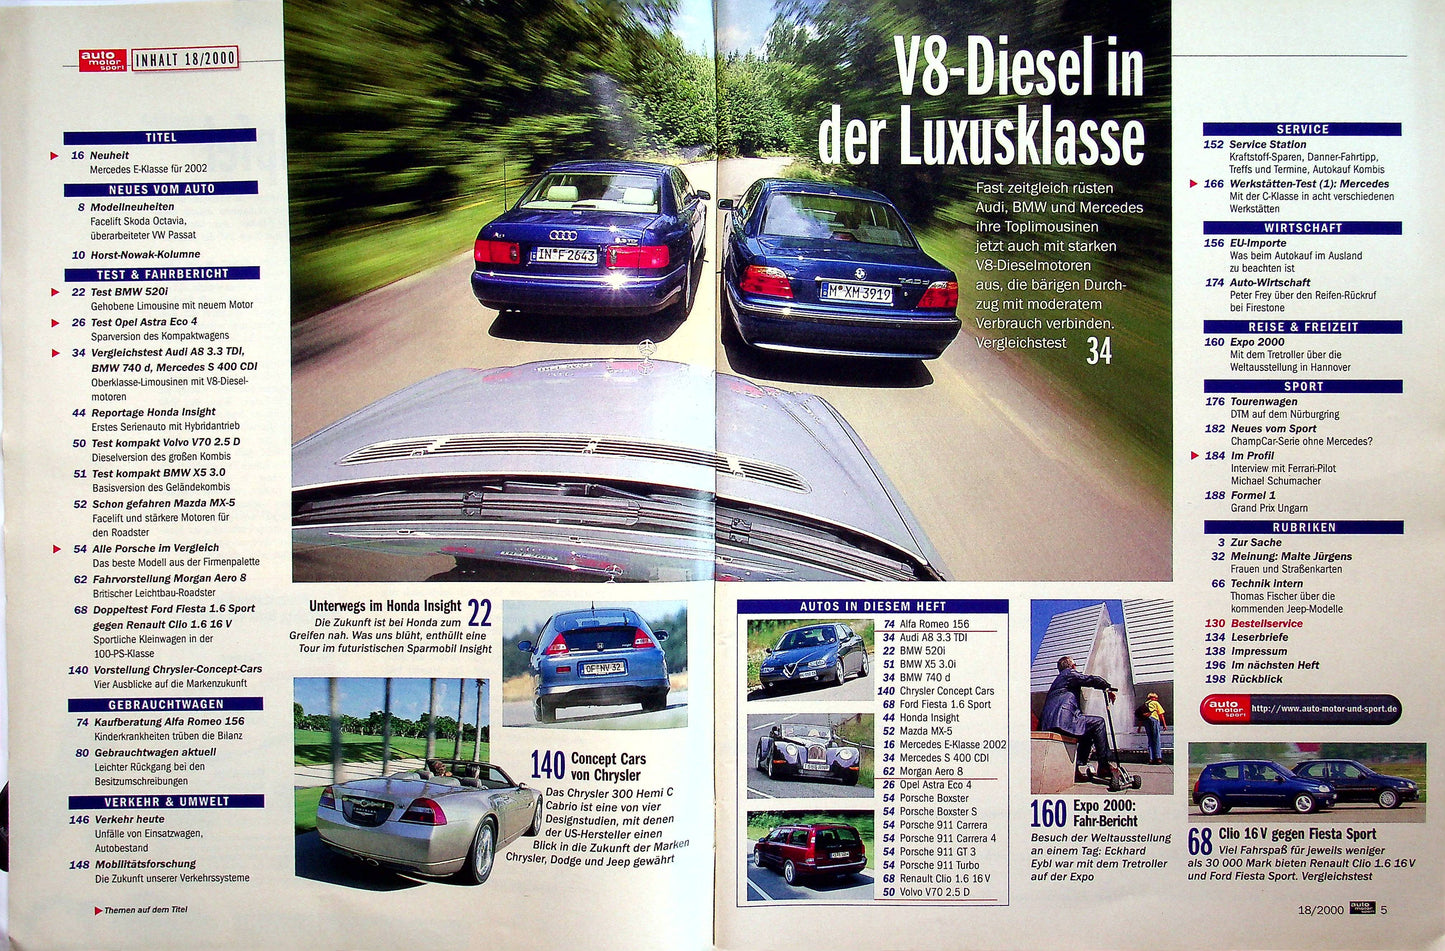 Auto Motor und Sport 18/2000